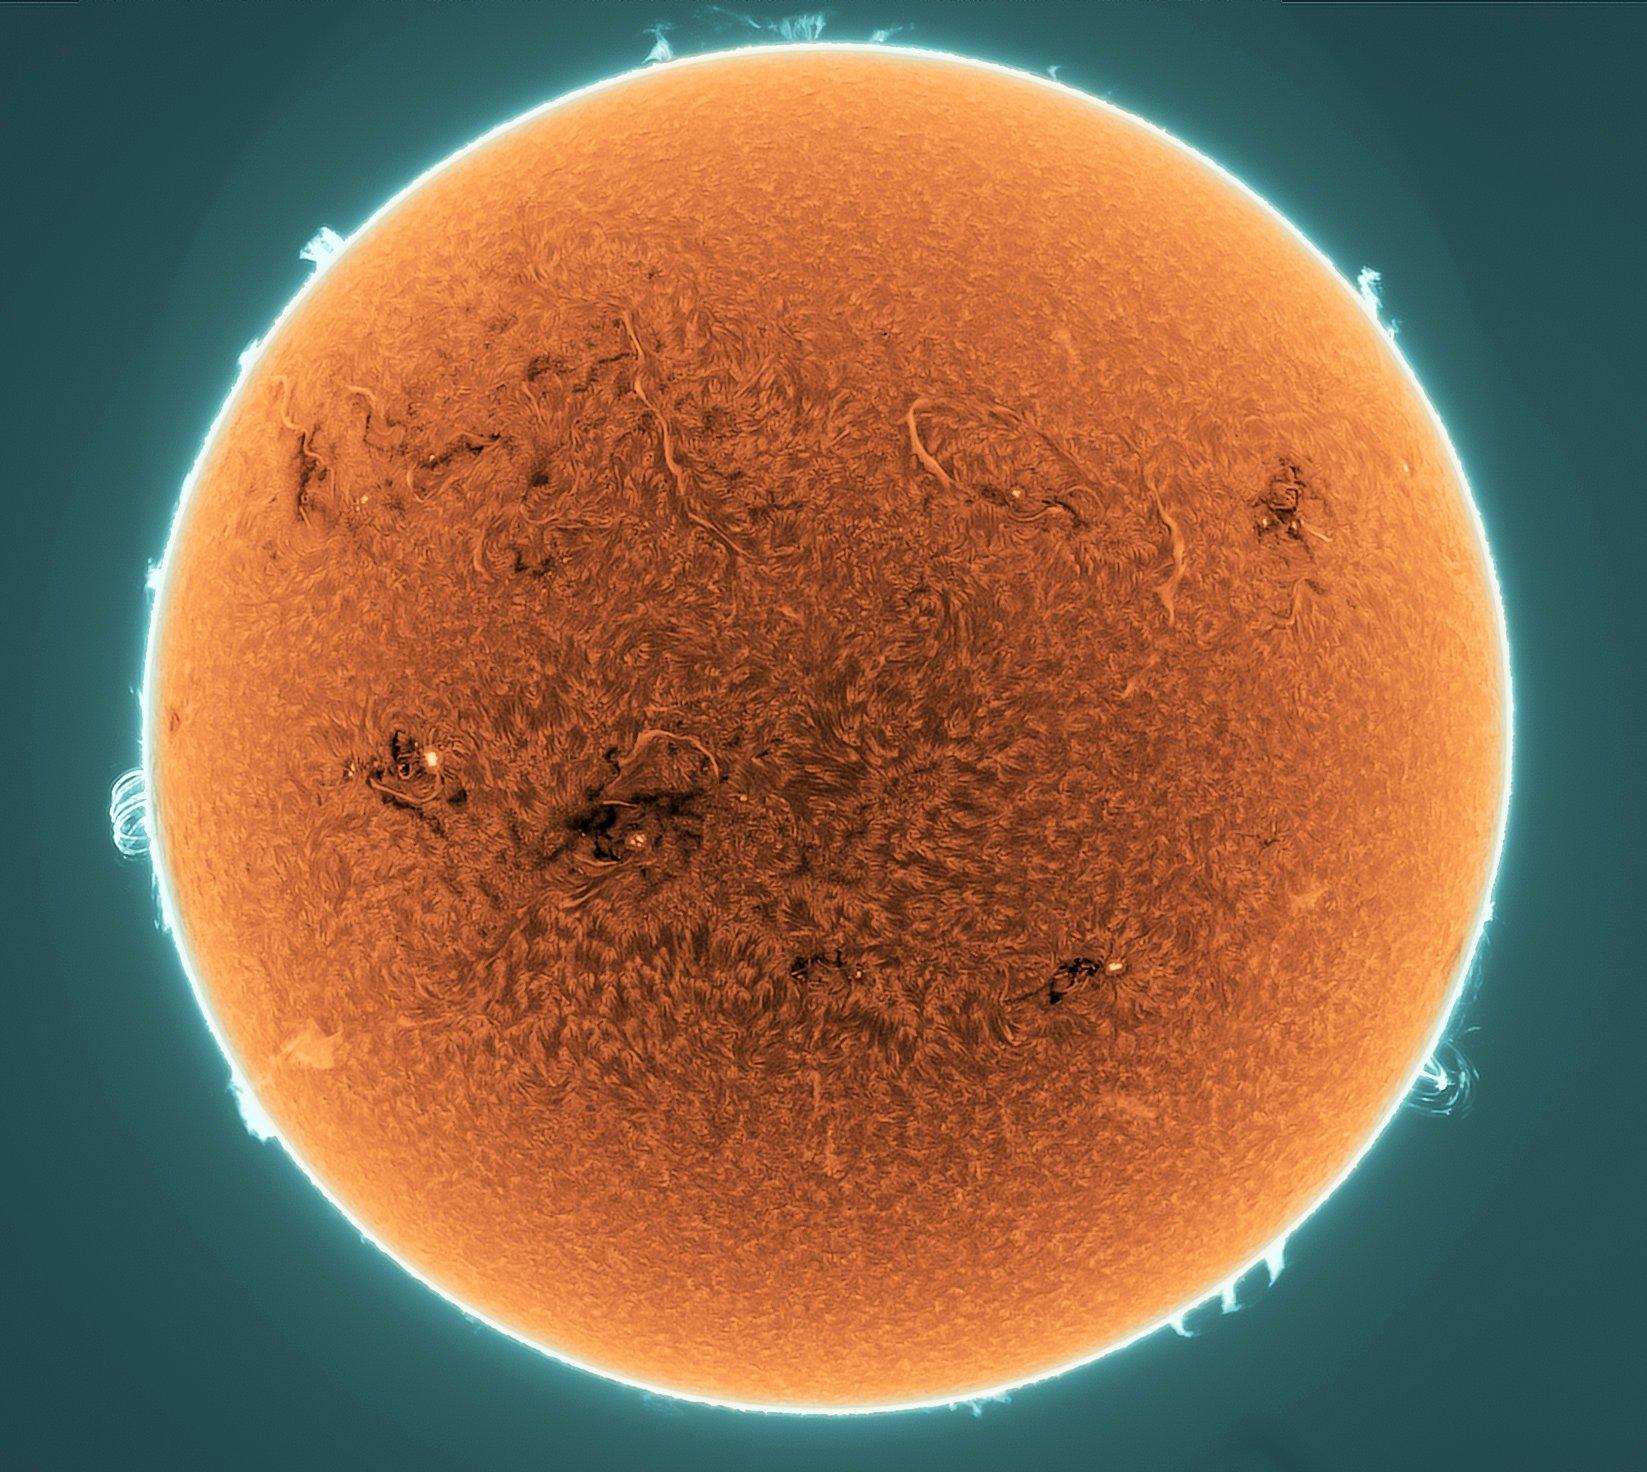 قرص الشمس بلون برتقالي يبدو وكأنّه مكسوٌّ بخيوط بعضها كبير في حين تظهر آثار النشاط الشمسي عند الحافّة على خلفيّةٍ مخضرّة